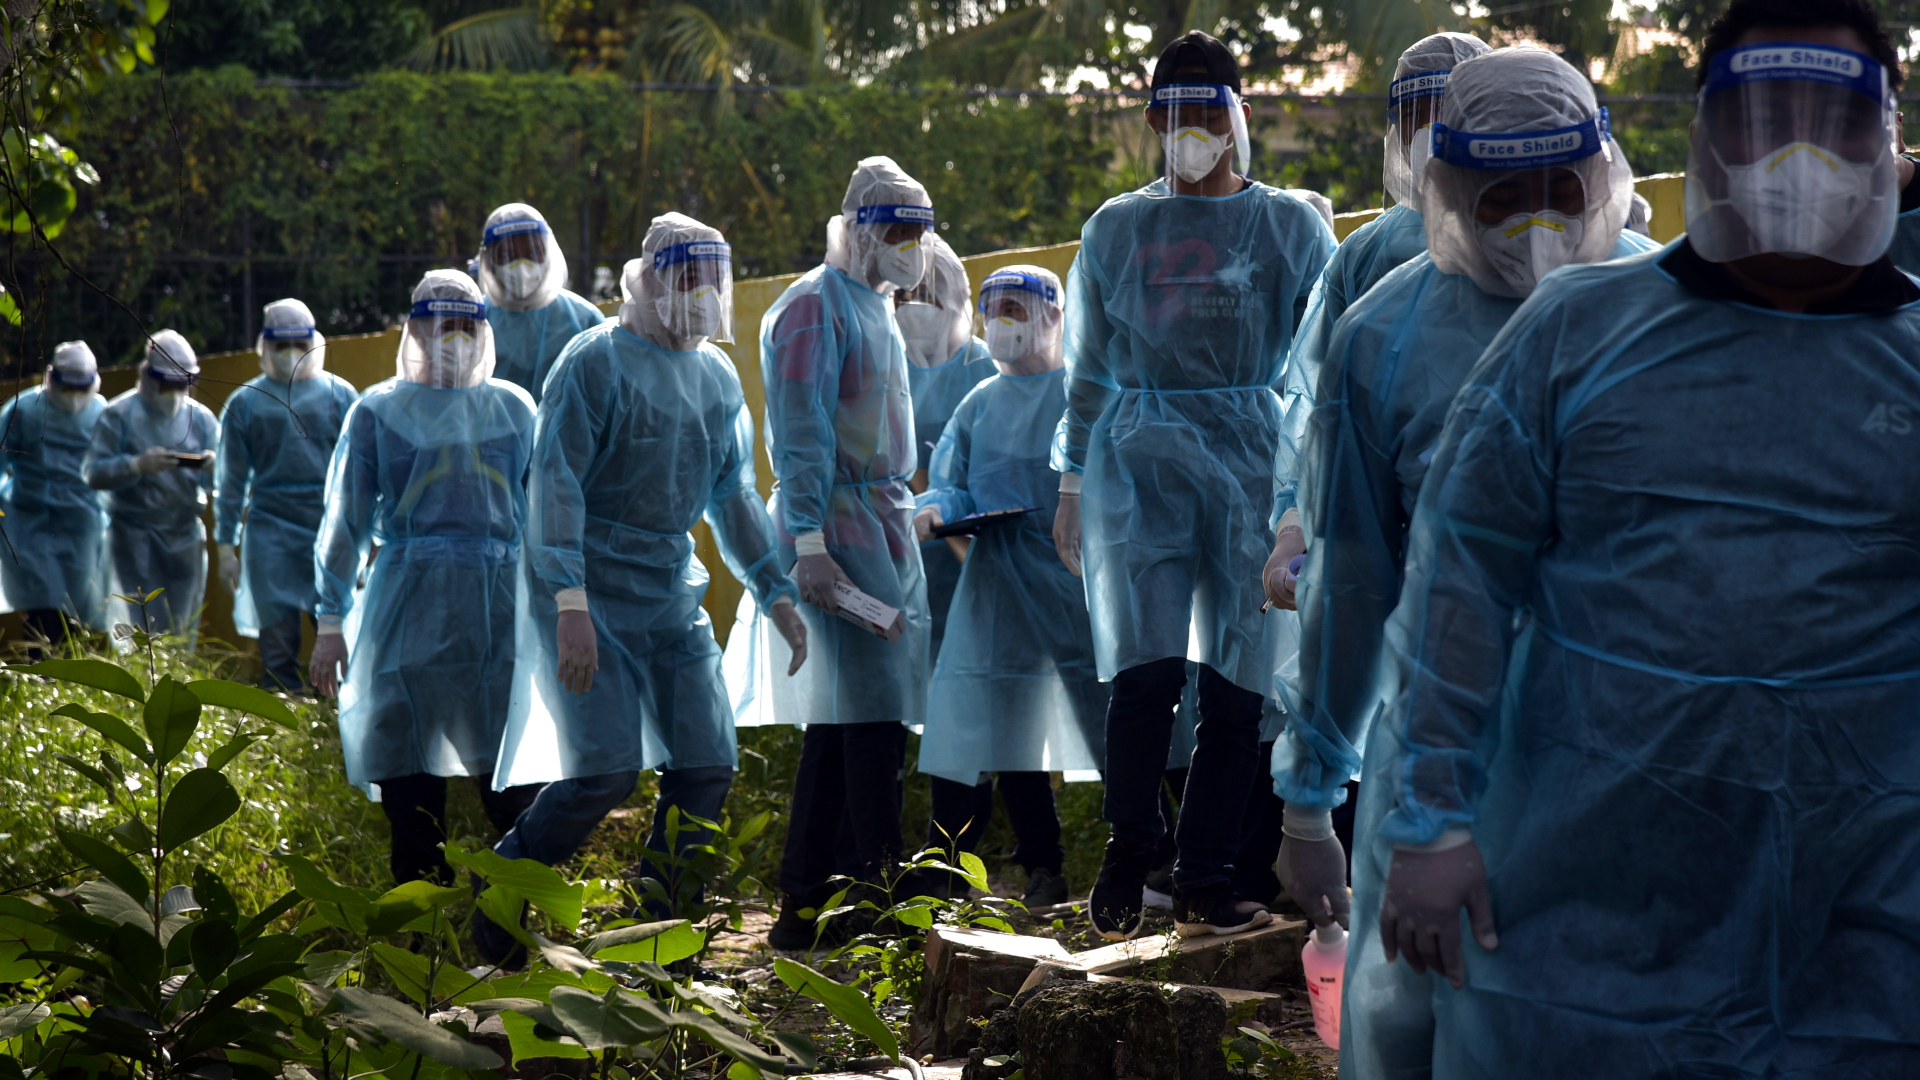 Helfer in Schutzkleidung laufen in einer Reihe durch Labuan in Malaysia. Sie versuchen, unter der Bevölkerung Corona-Infektionen zu erkennen. | dpa